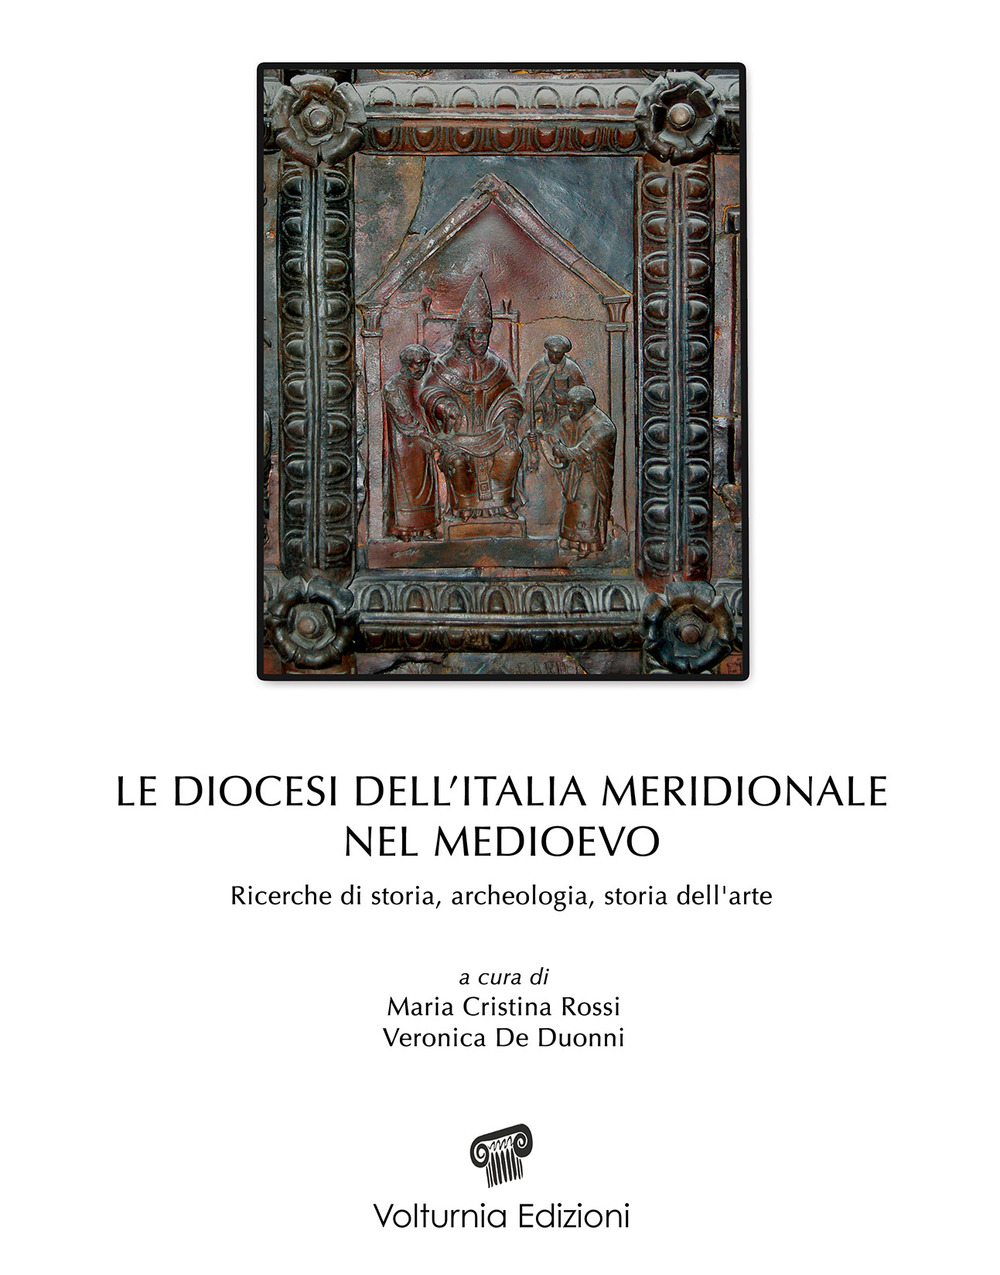 Le diocesi dell'Italia meridionale nel Medioevo. Ricerche di storia, archeologia e storia dell'arte